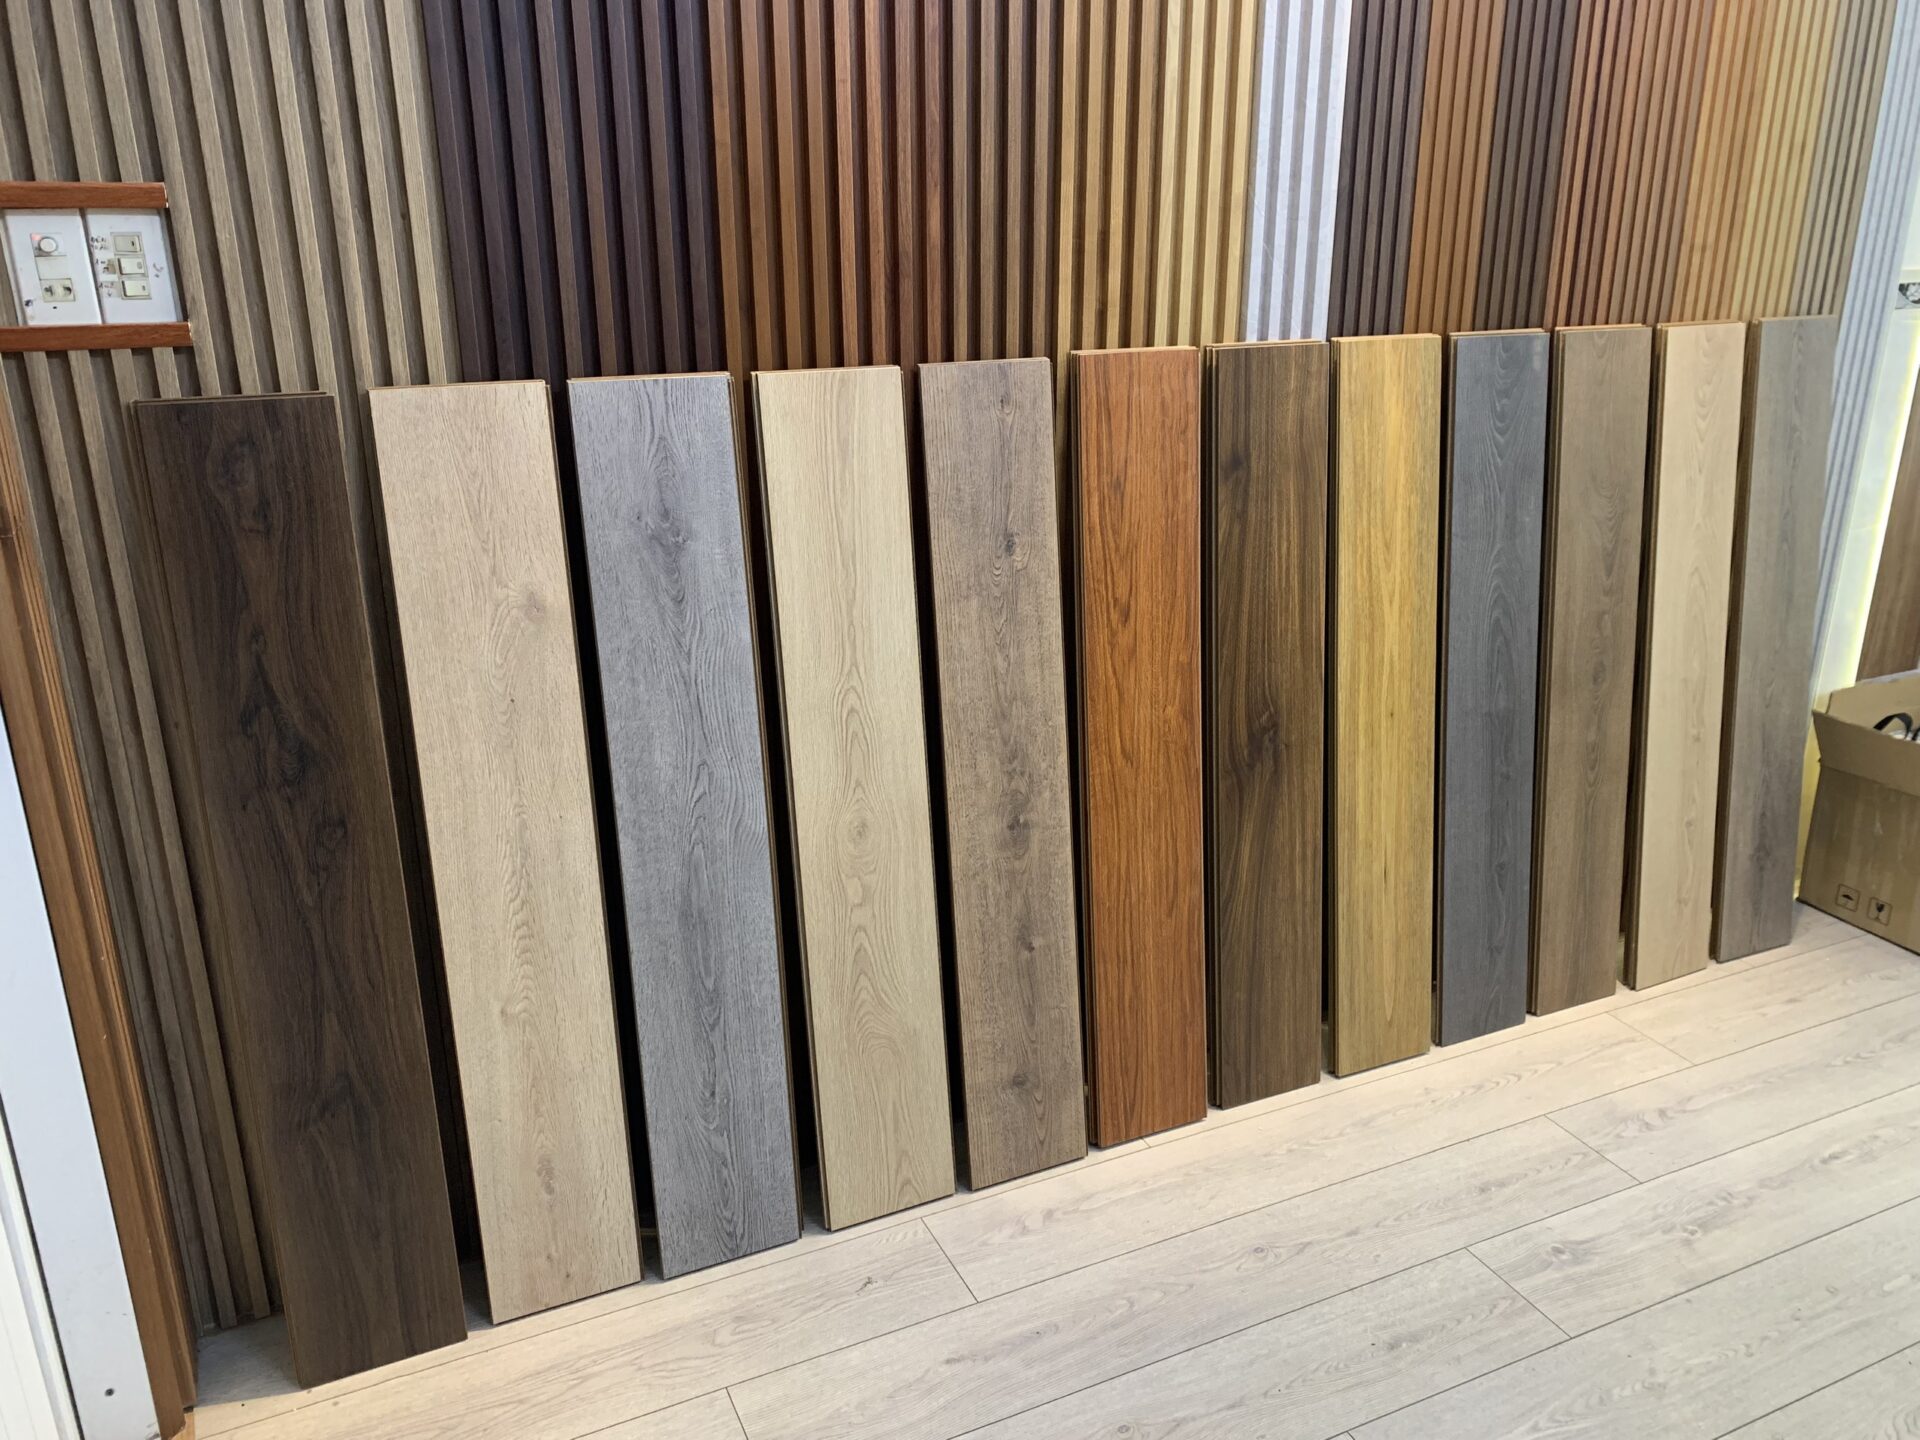 Thanh mẫu sàn gỗ công nghiệp Hamilton tại showroom Floordi Bình Định